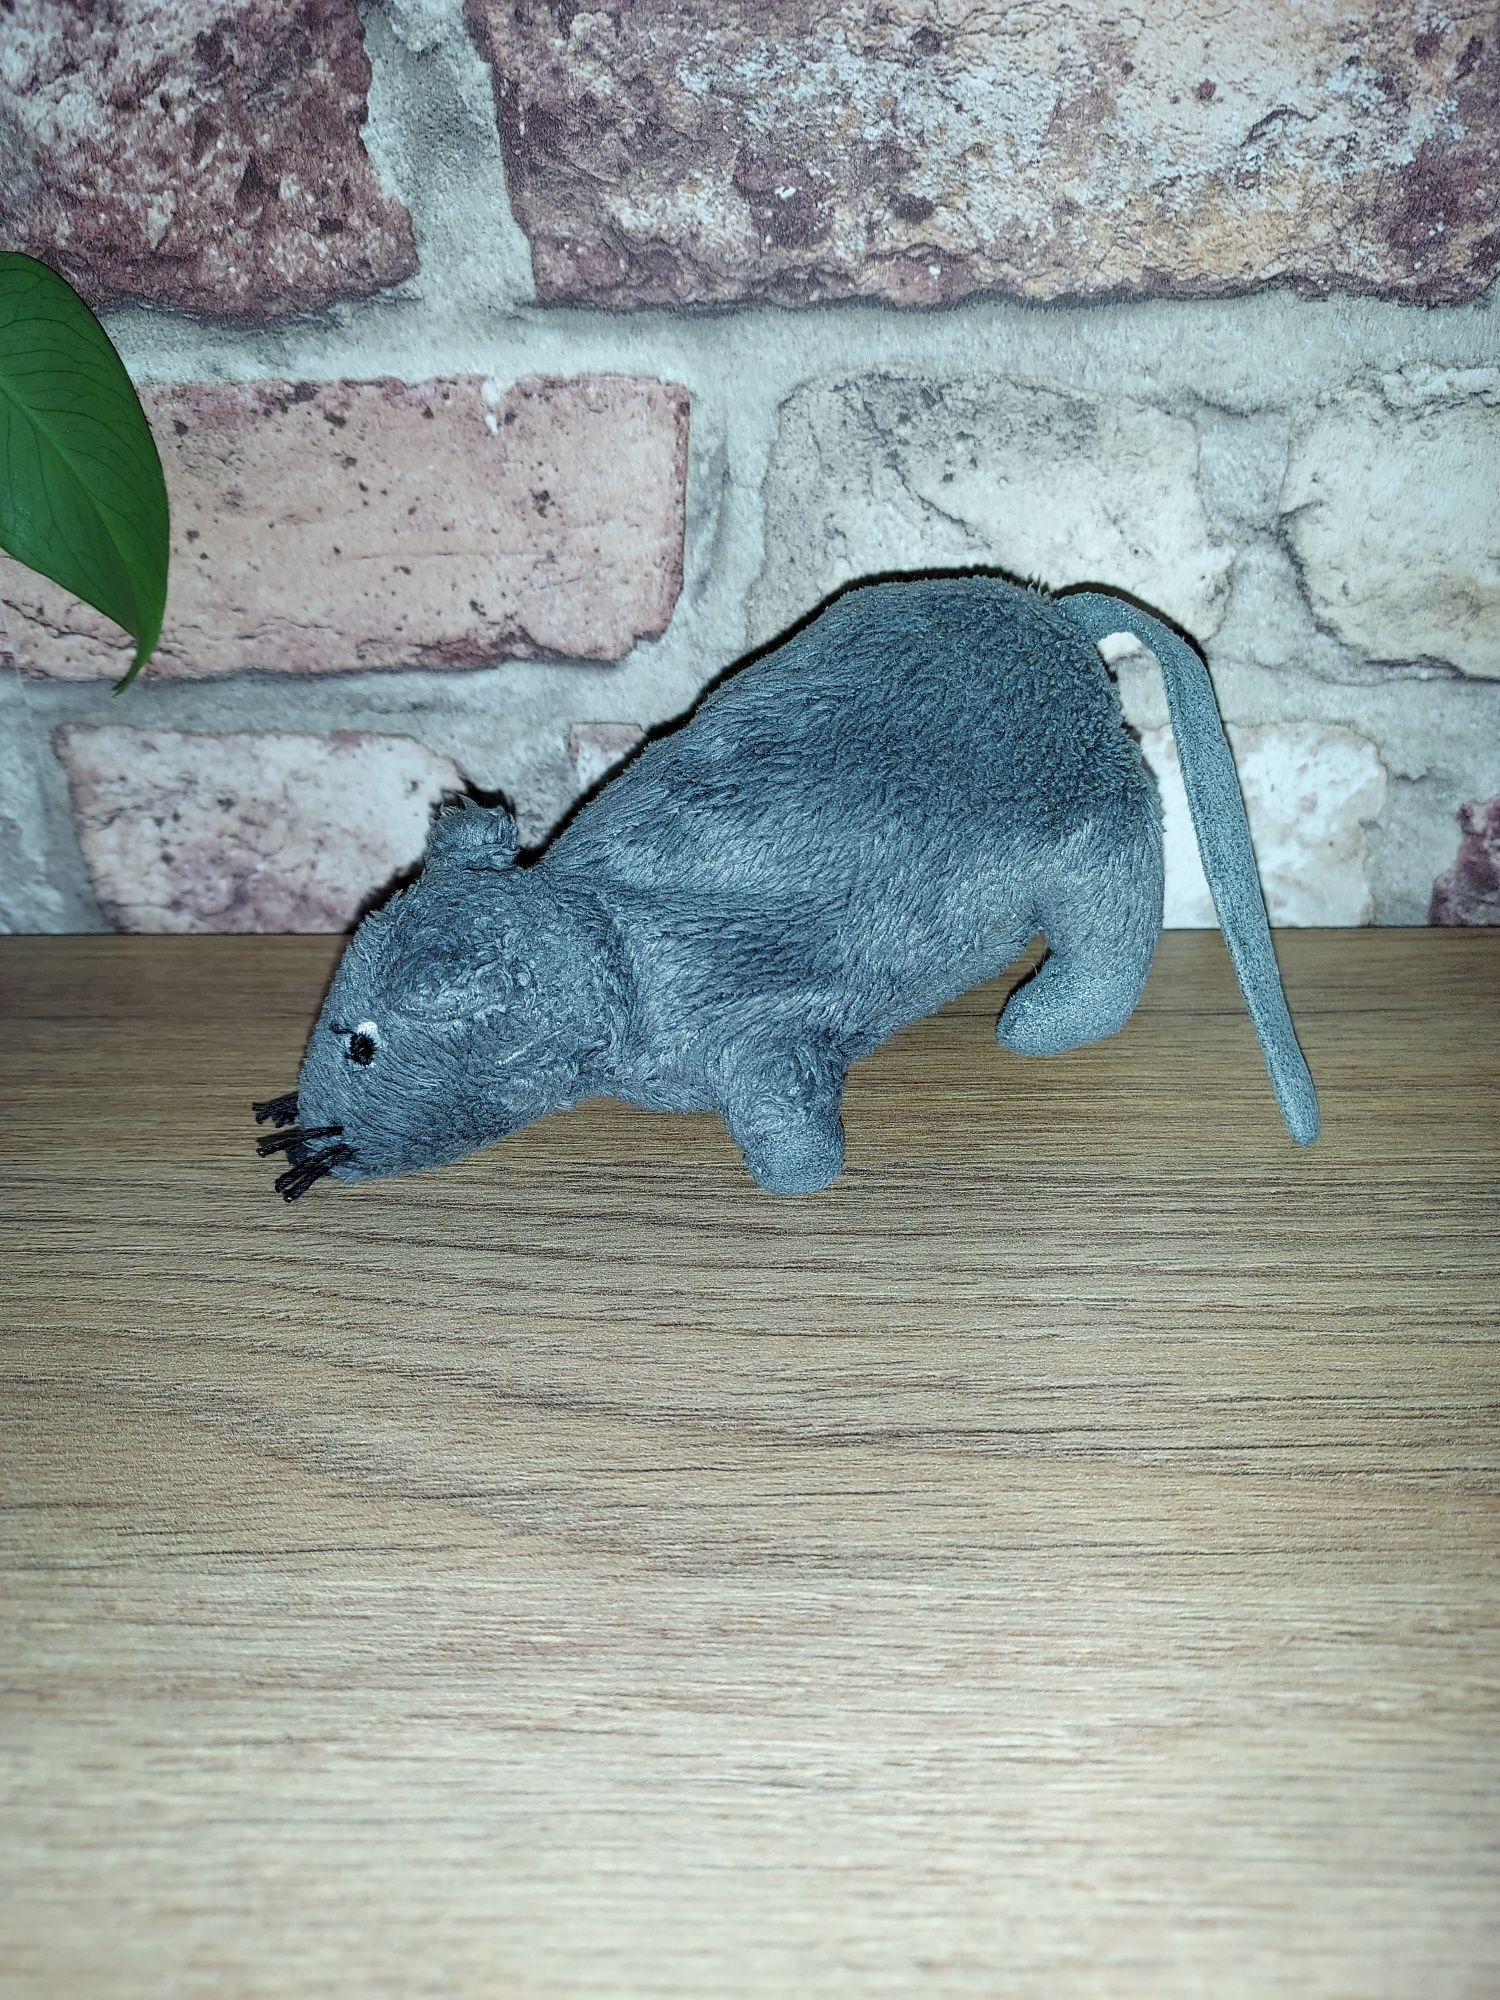 Ikea Gosig Mus mysz myszka pluszowa, maskotka szara i brązowa zestaw